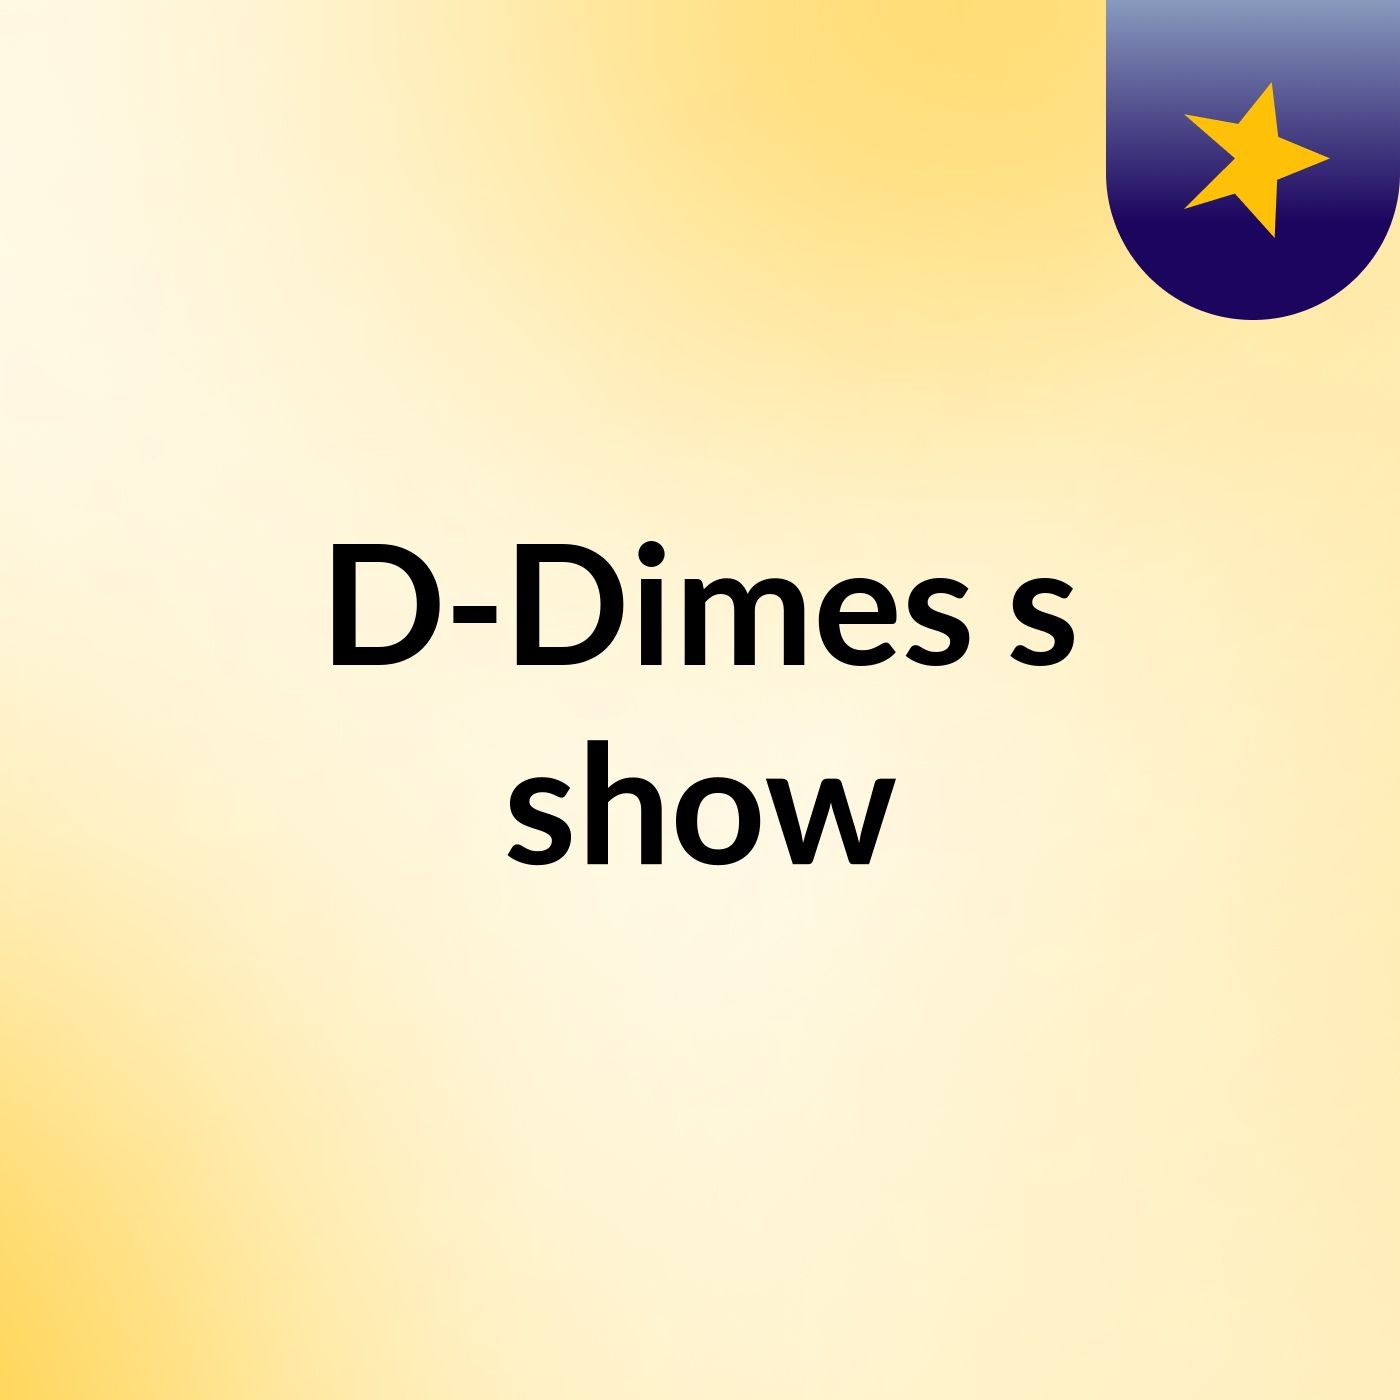 D-Dimes's show